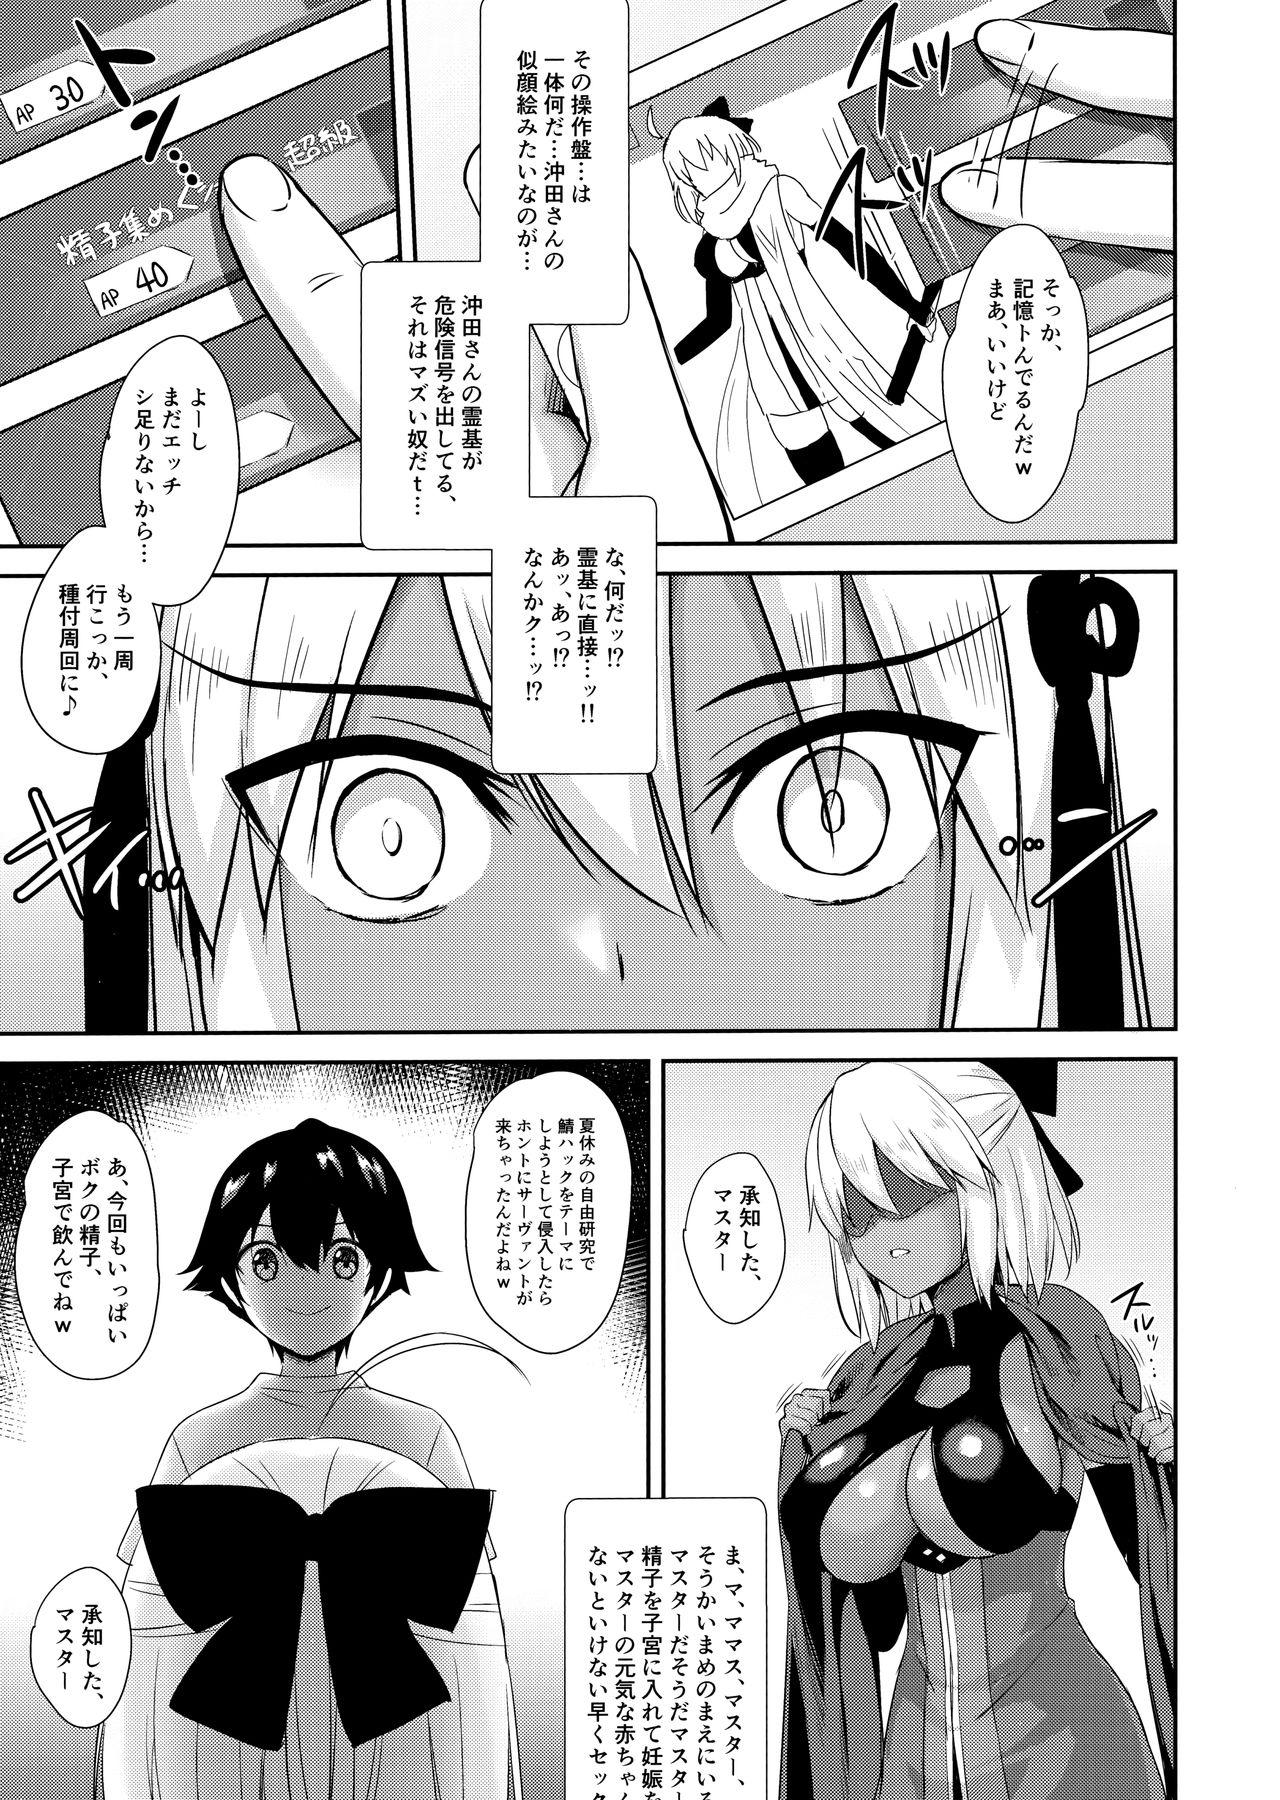 Fun Okita Alter no Tanezuke Shuukai - Fate grand order Woman - Page 9